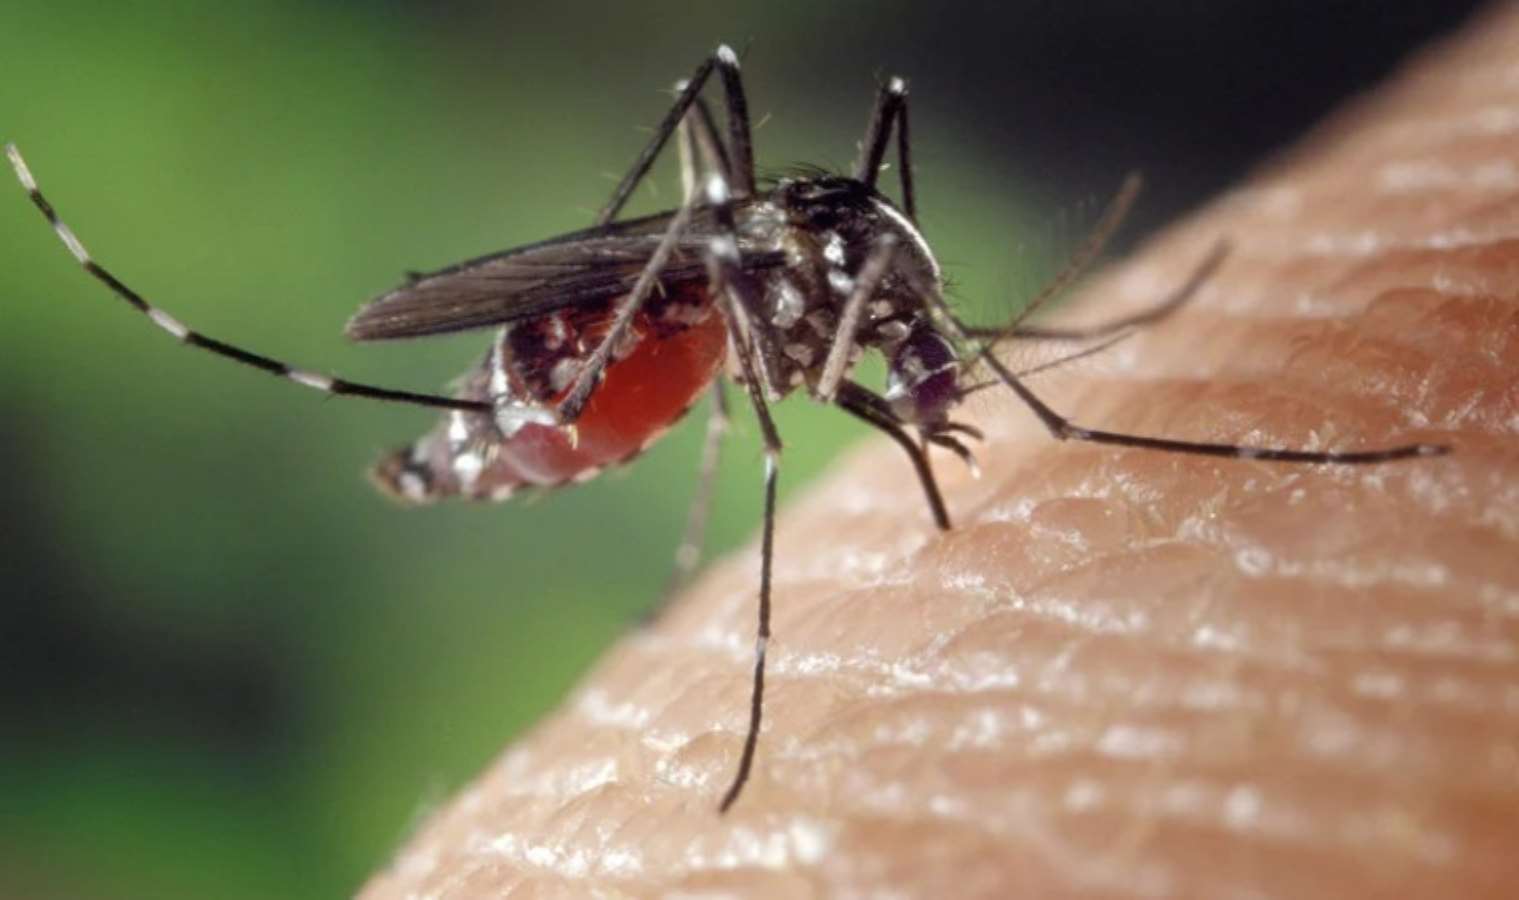 AB'den 'sivrisinek' uyarısı: Bulaşıcı hastalıkları artırabilir